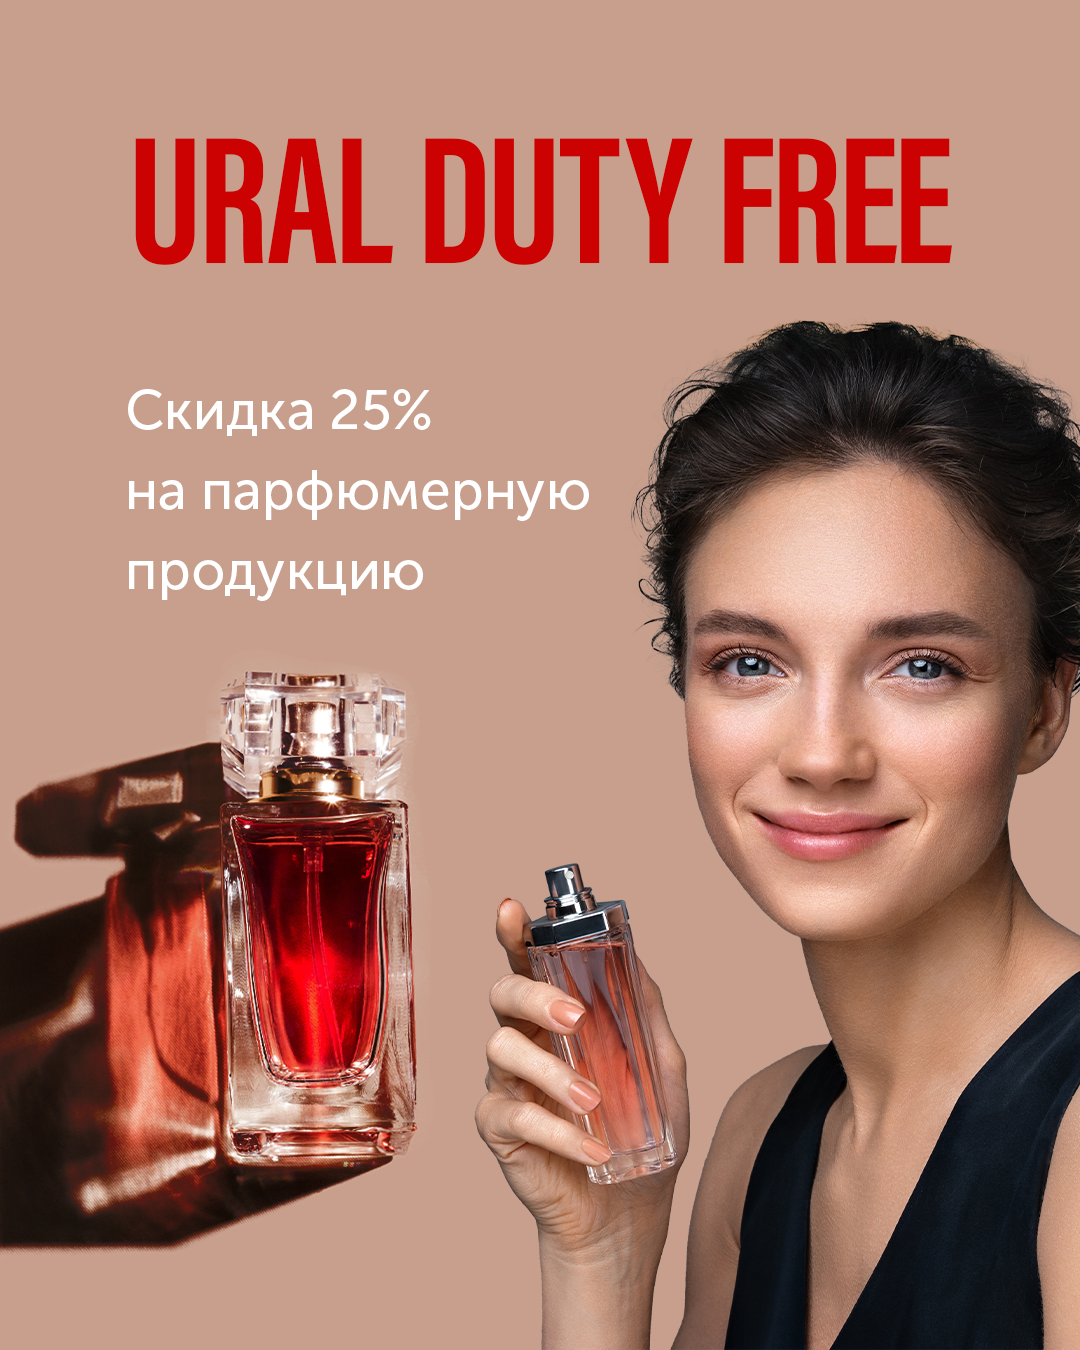 Скидка 25% на парфюмерию в Ural Duty Free г. Пермь! 